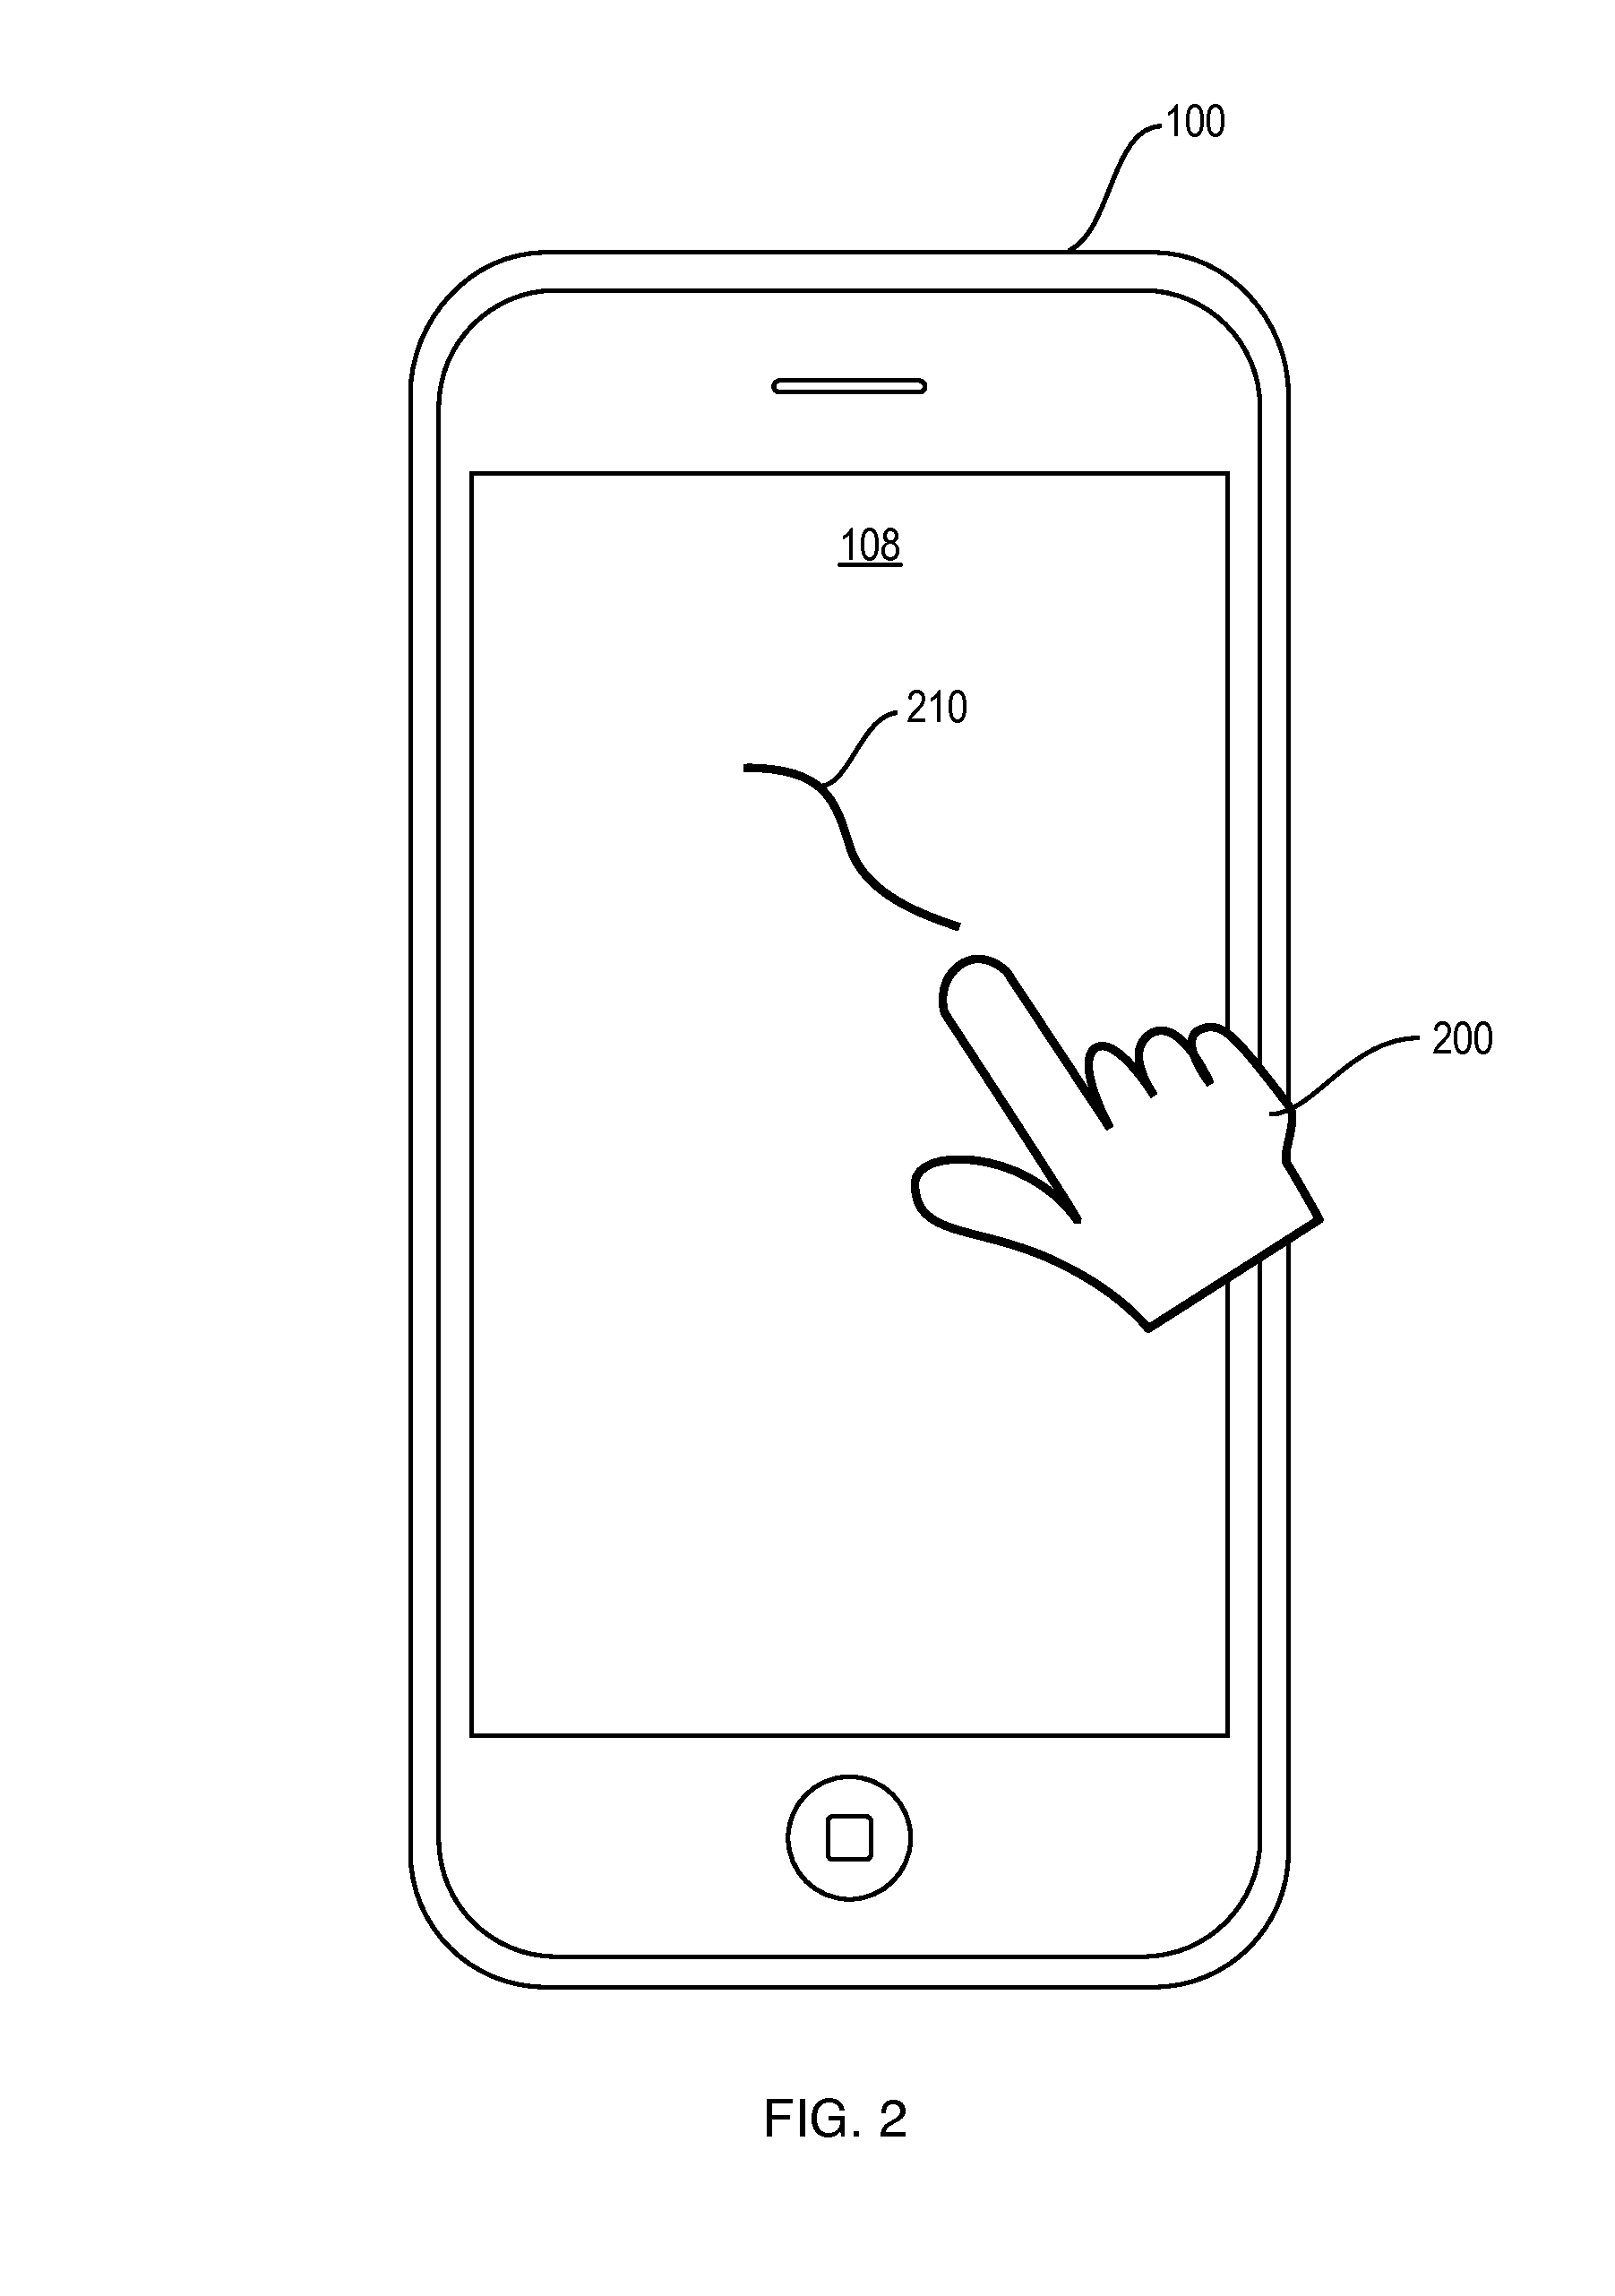 Fingerprint based smartphone user verification